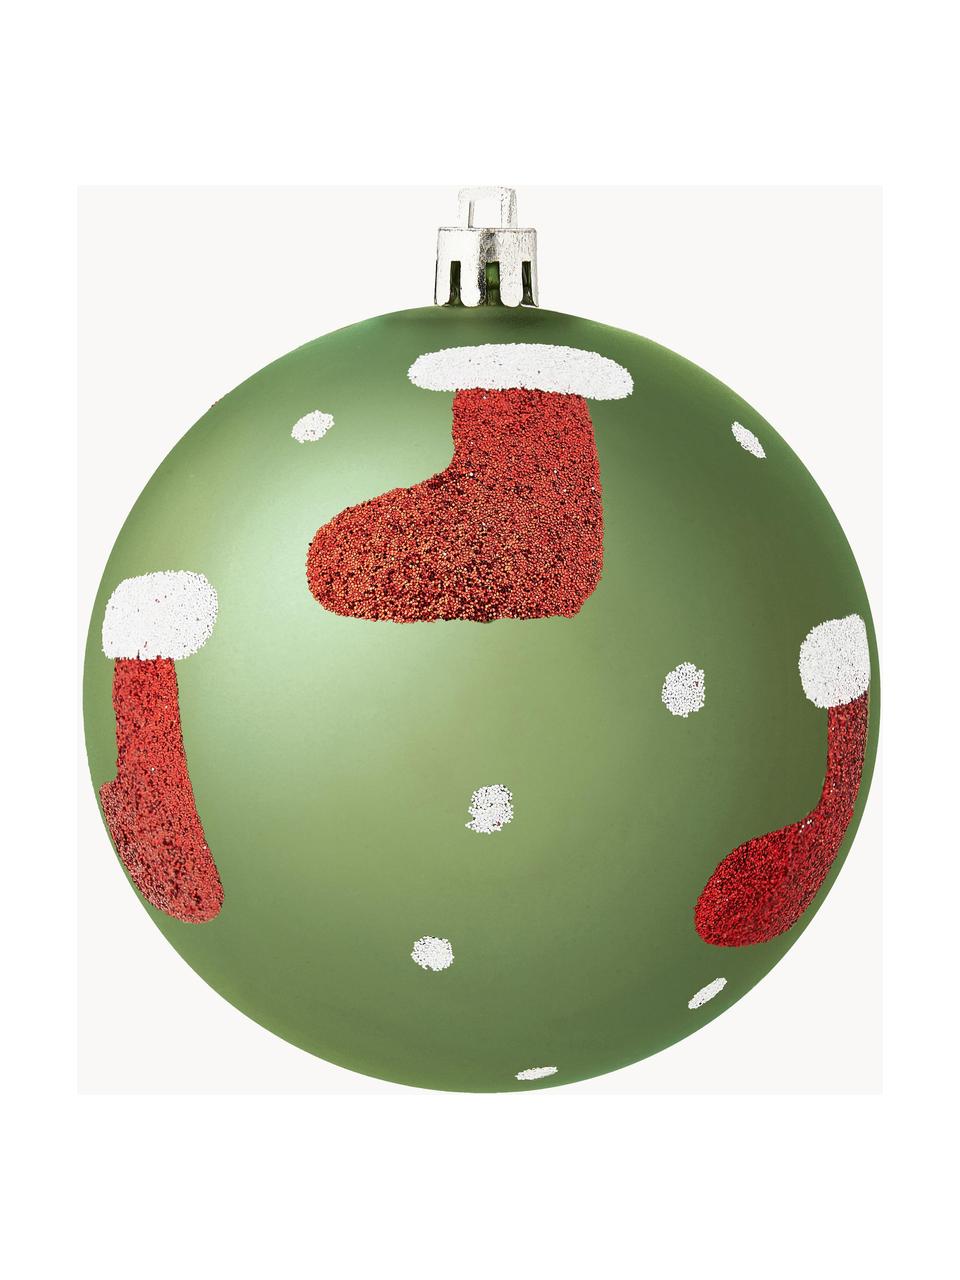 Breukvaste kerstballenset Socky Ø 8 cm, 12 stuks, Kunststof, Groen, wit, rood, zilverkleurig, Ø 8 cm